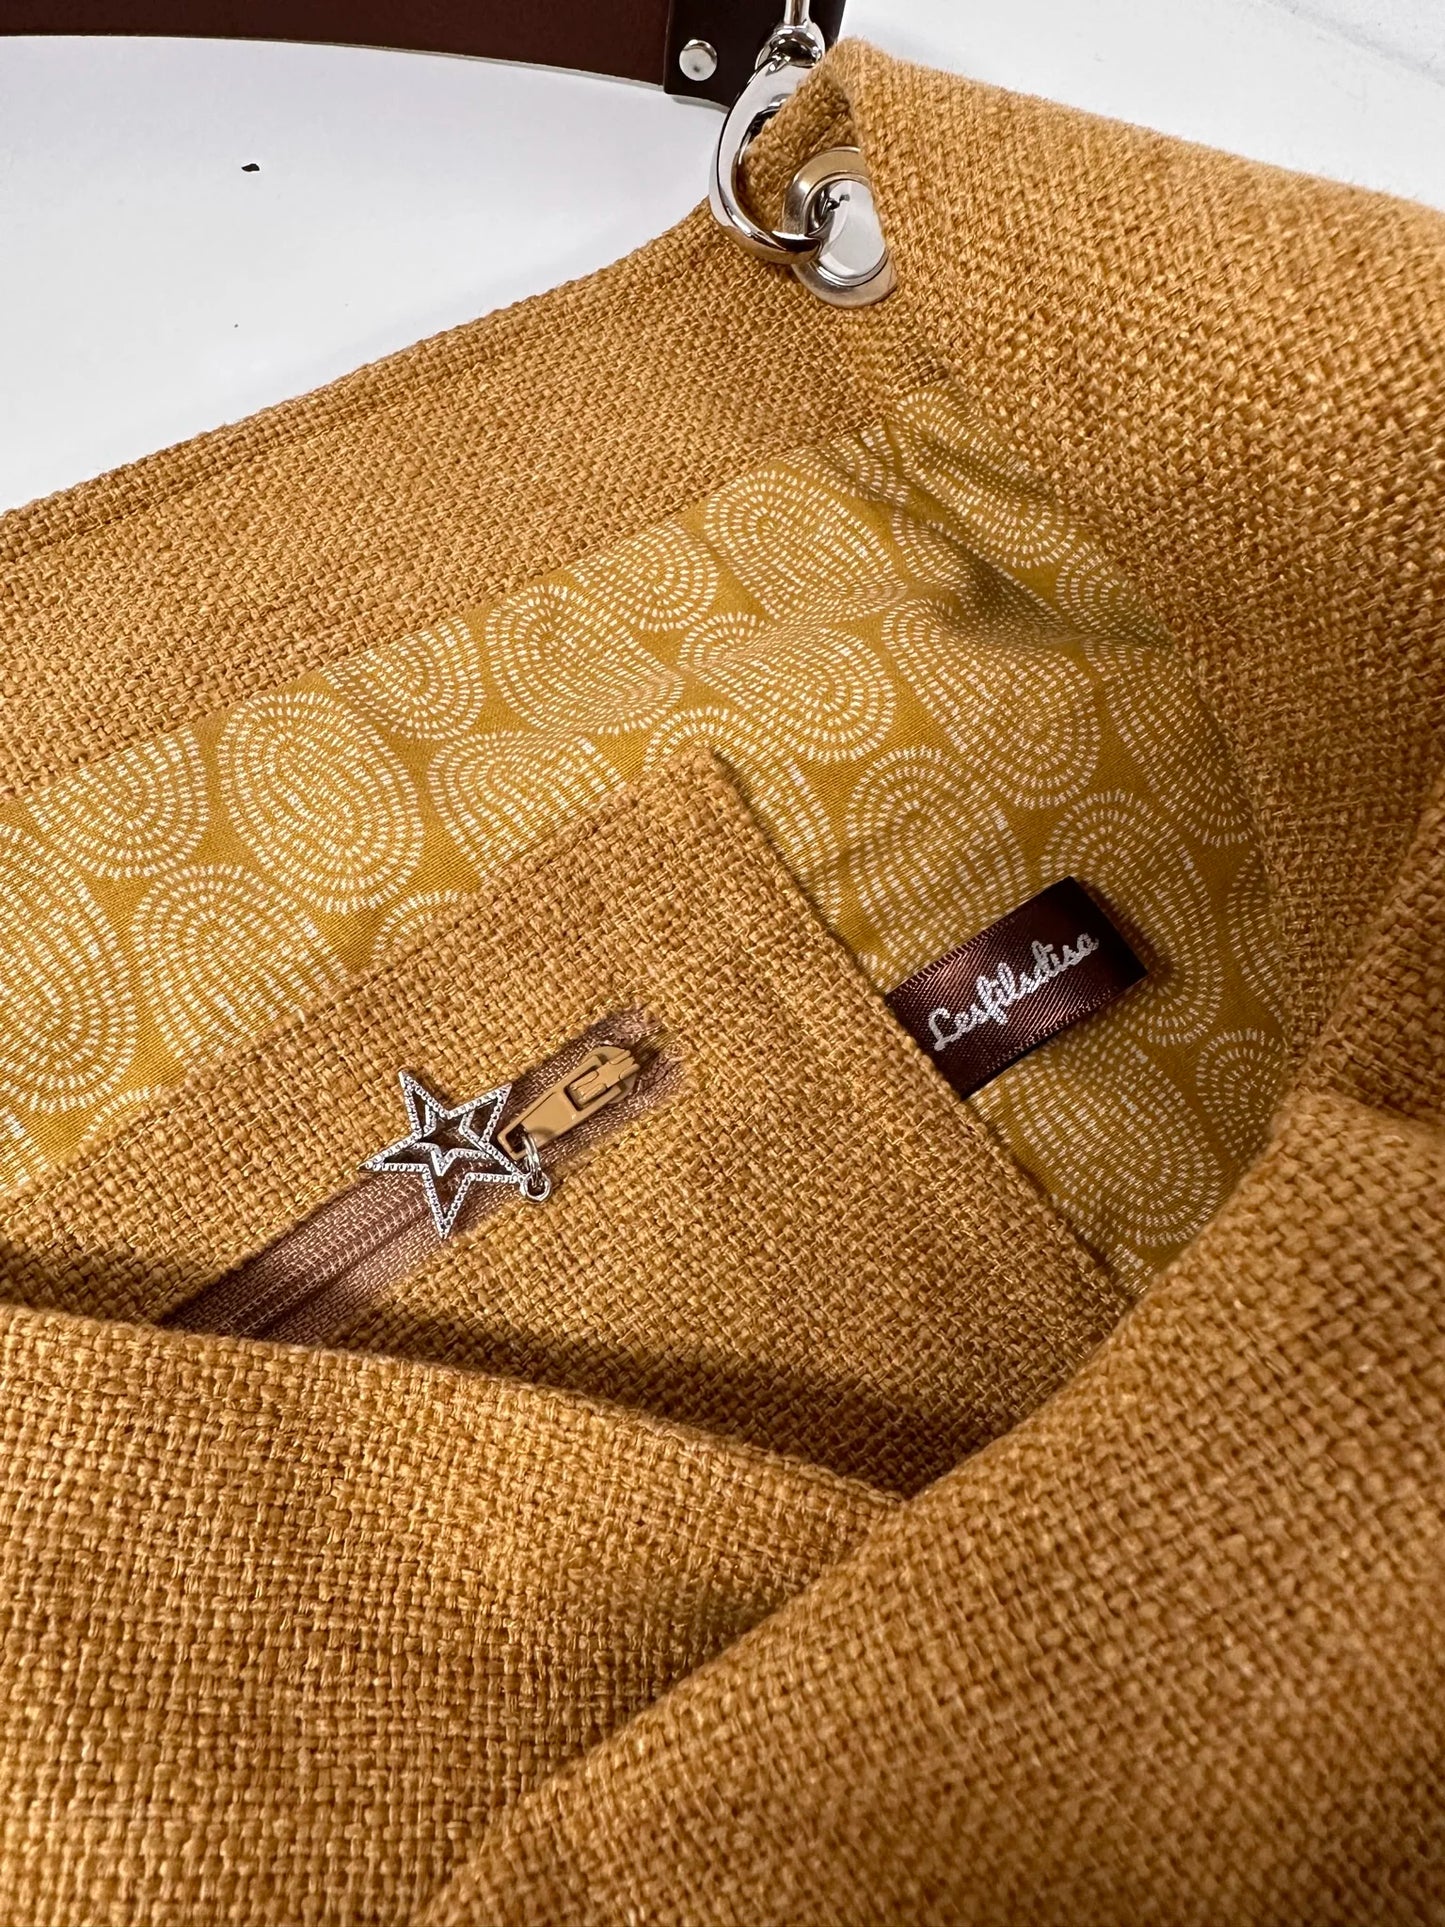 La poche zippée intérieure du sac hobo en lin jaune moutarde et son anse en cuir marron amovible.